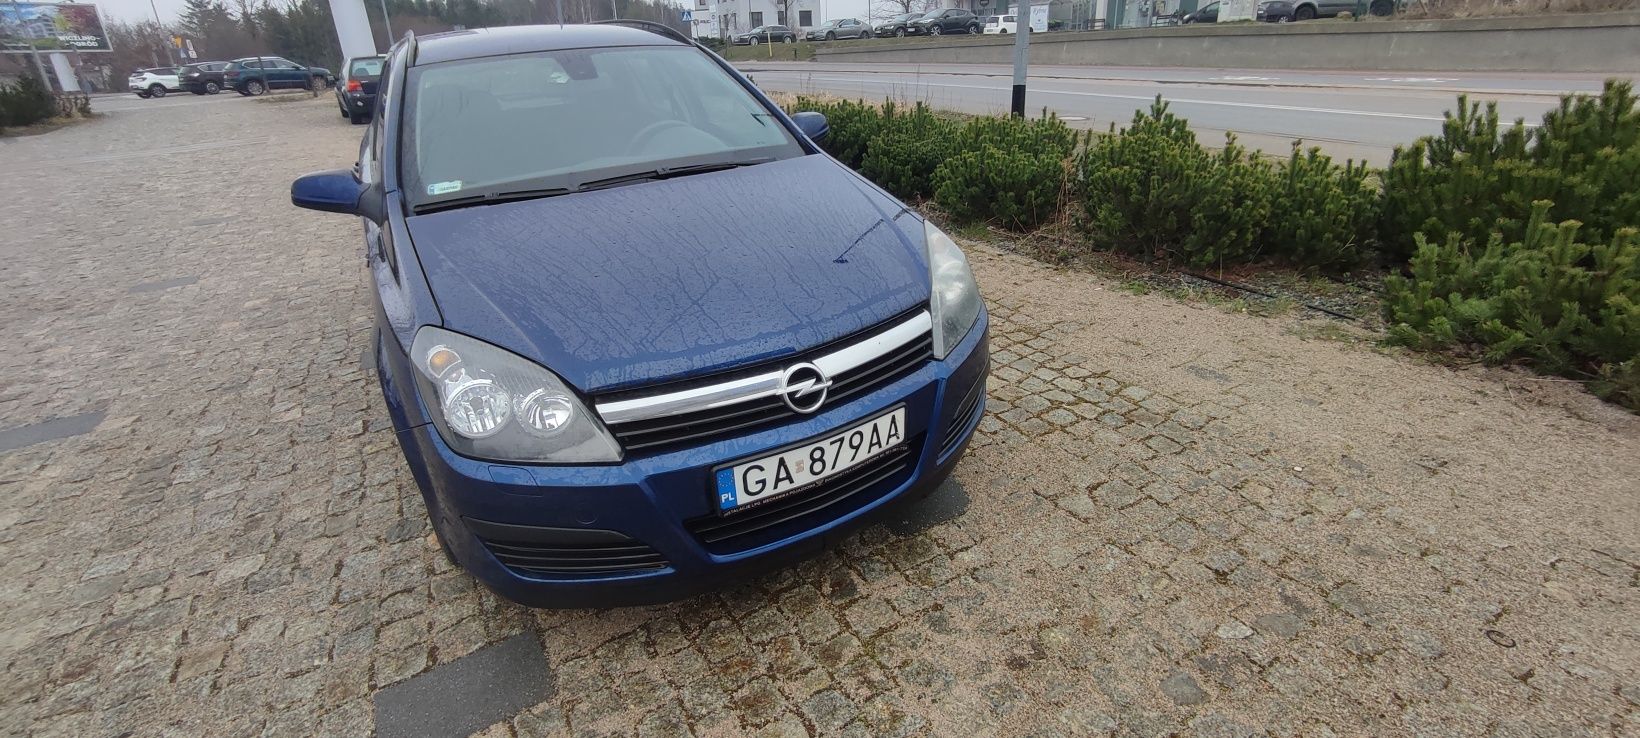 Opel Astra sprzedam